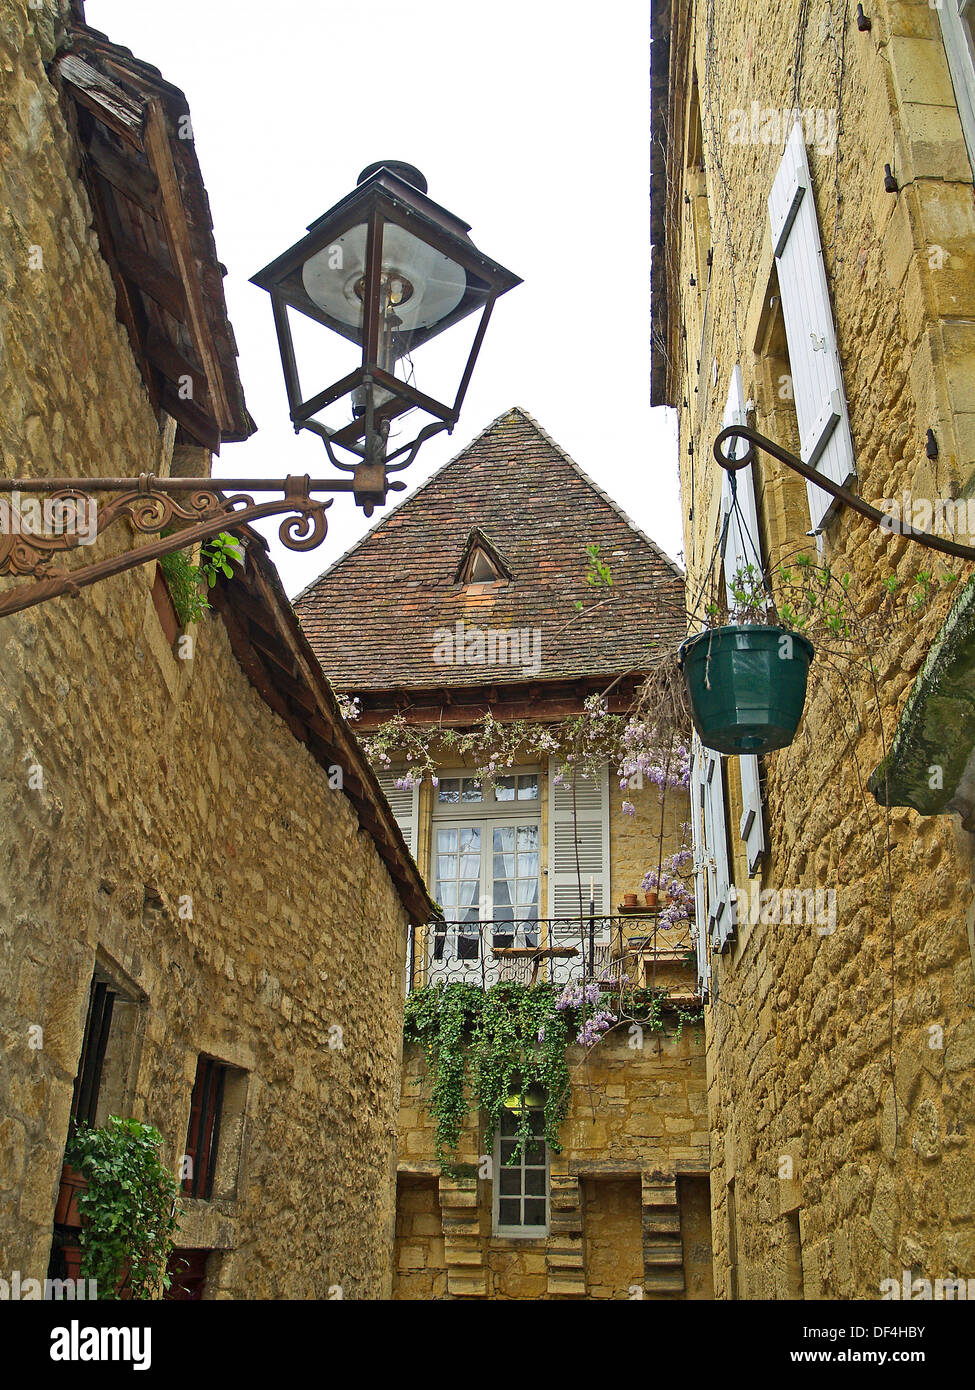 The sandstone buildings of Sarlat de Caneda,Dordogne,France Stock Photo